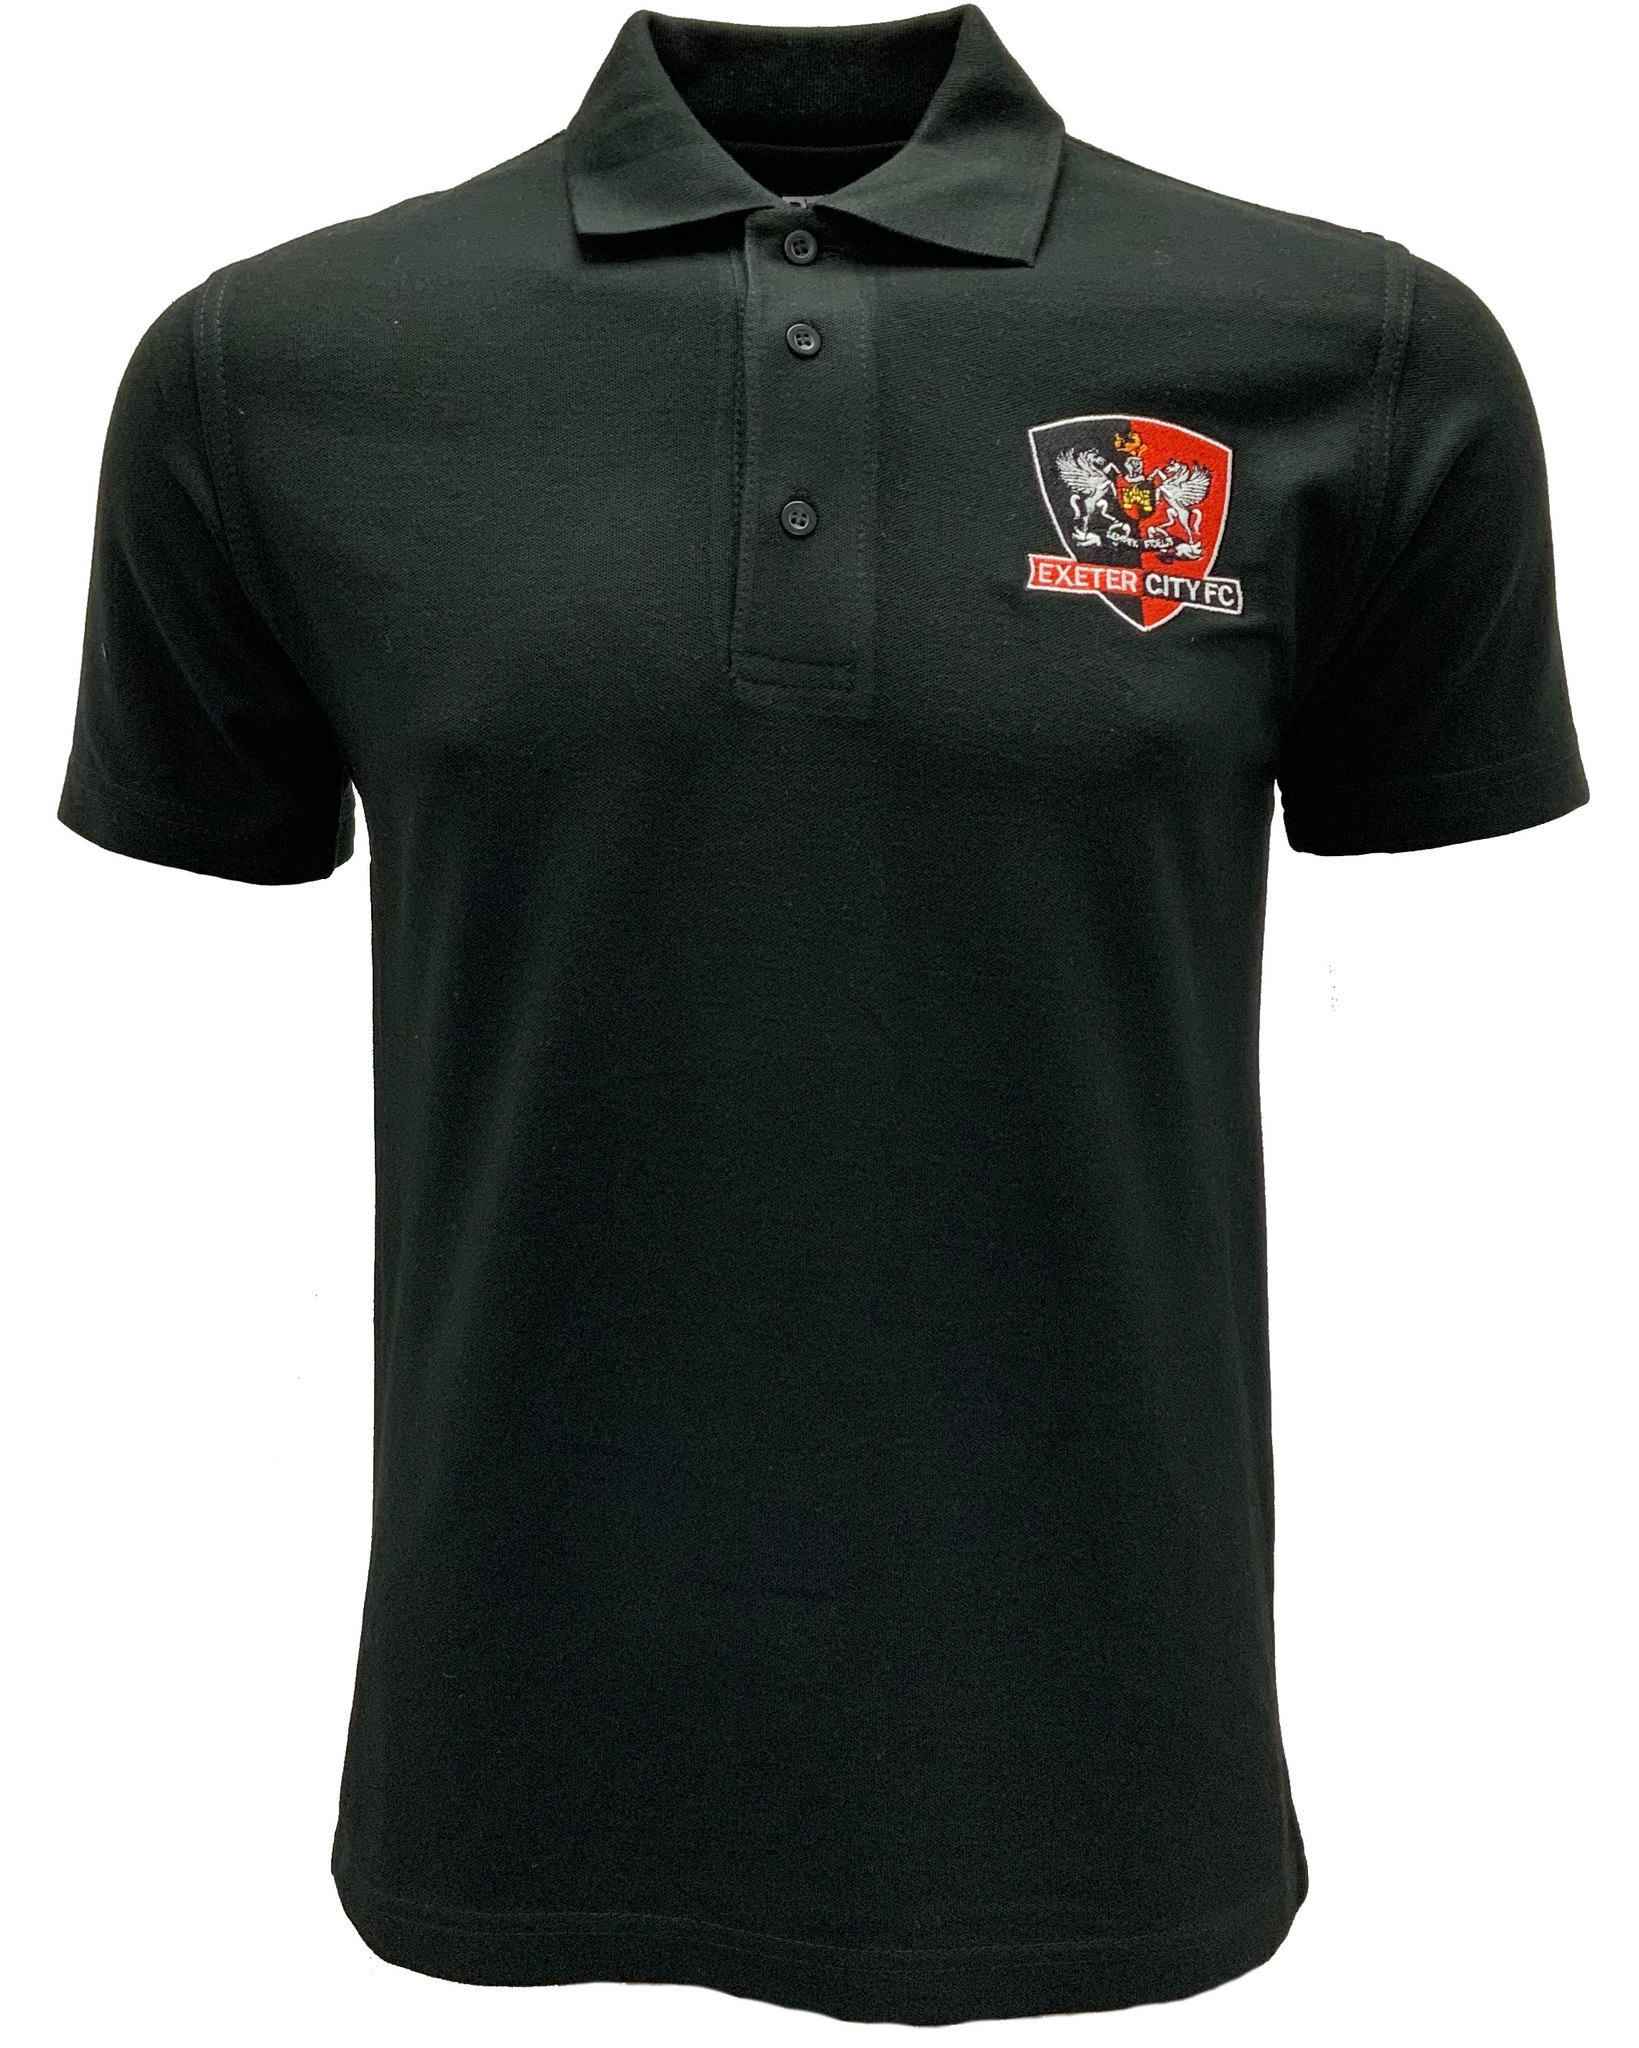 ECFC Classic Pique Polo Shirt - Black